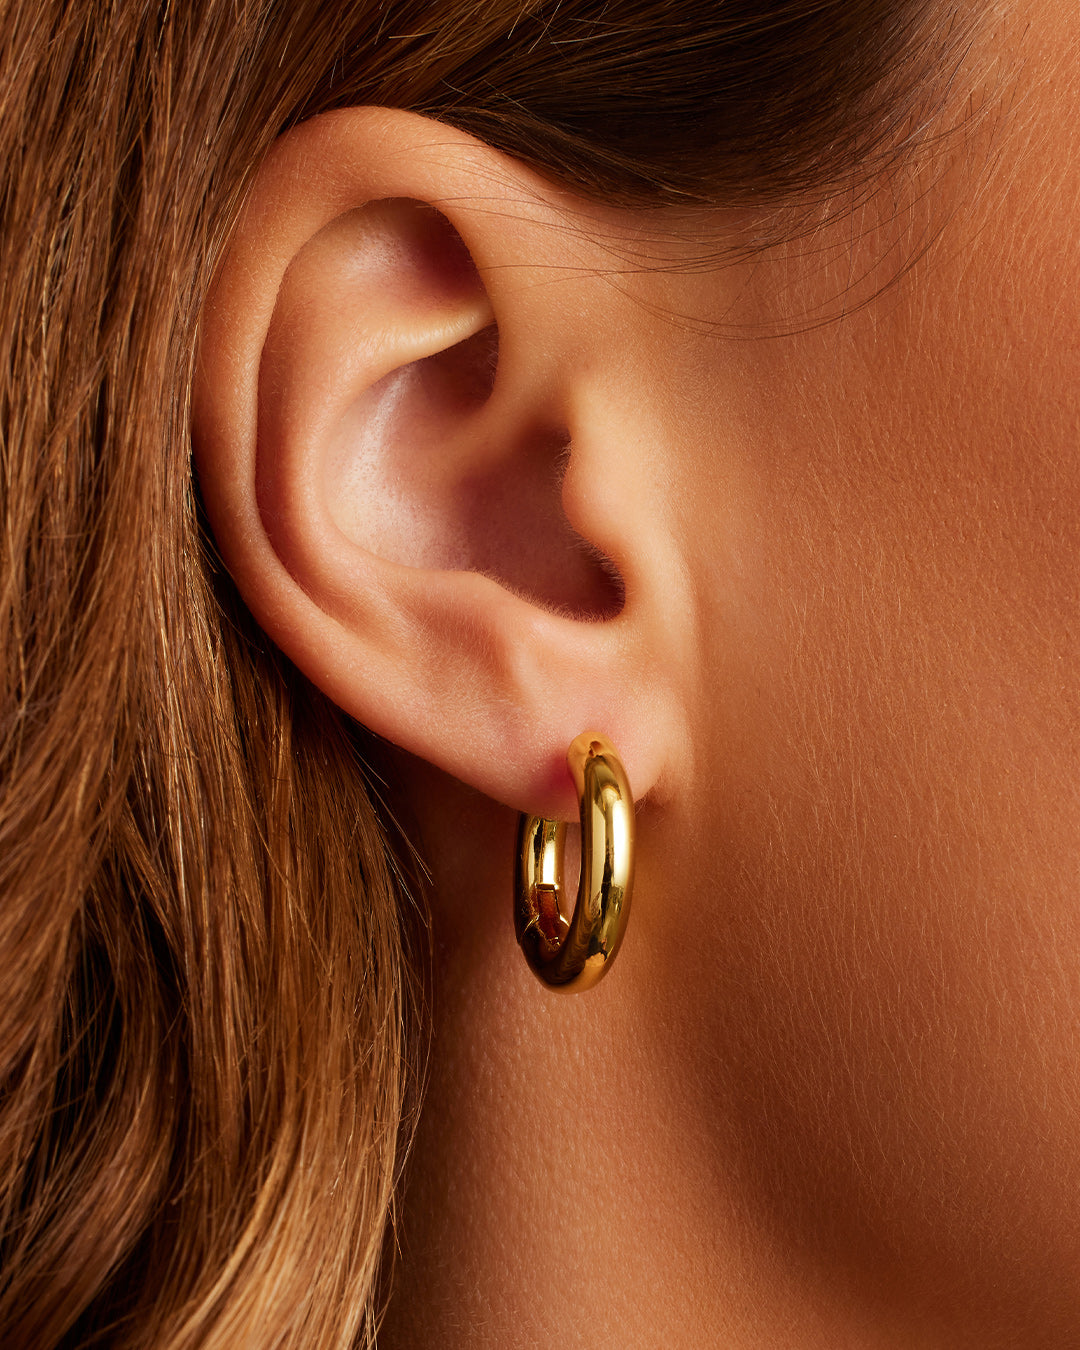 Star Charm Stud Earring in Gold/Star, Women's by Gorjana